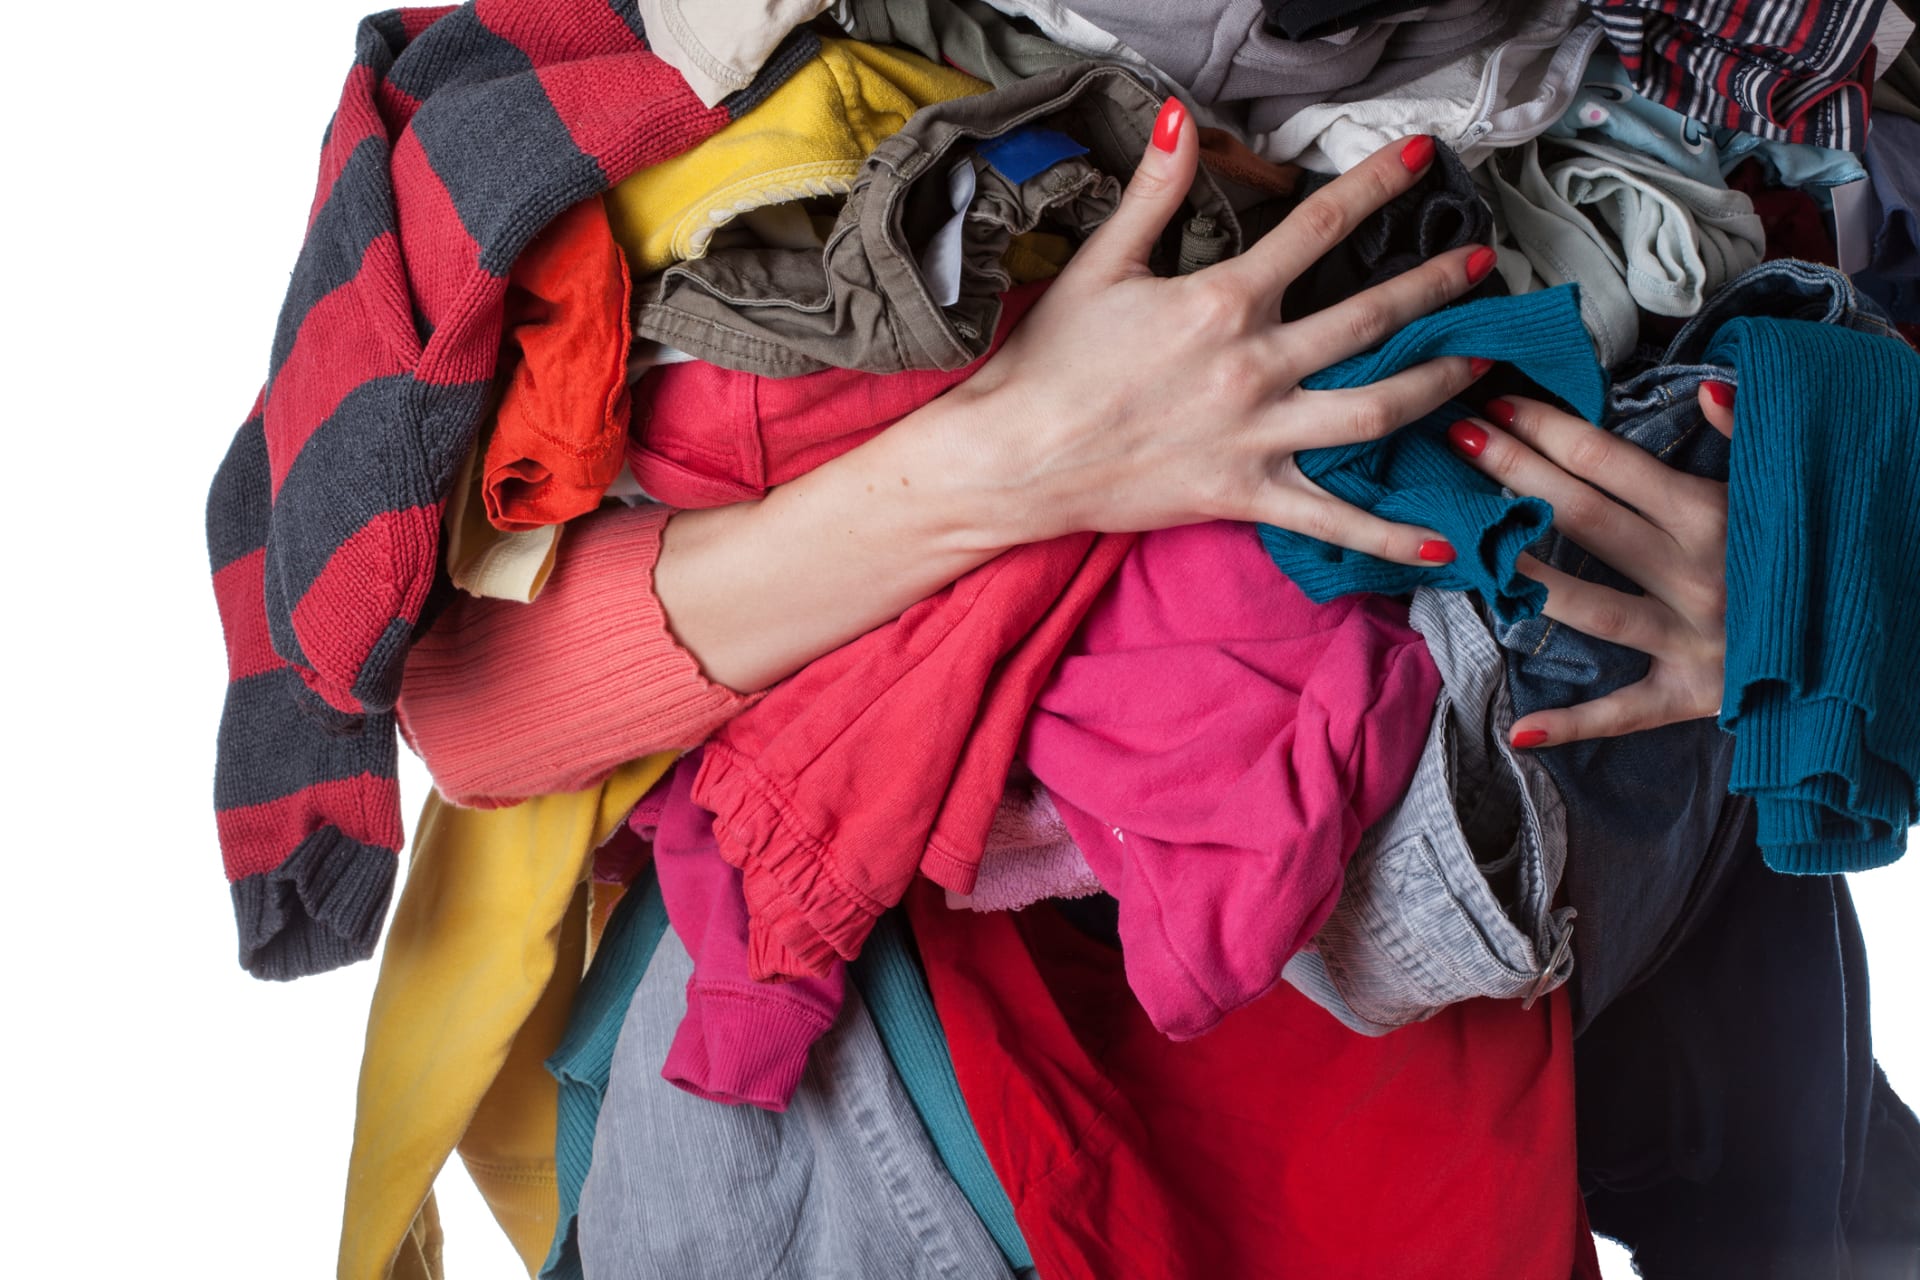 Problém jménem textilní odpad: Co dělat s oblečením, které už nechcete?